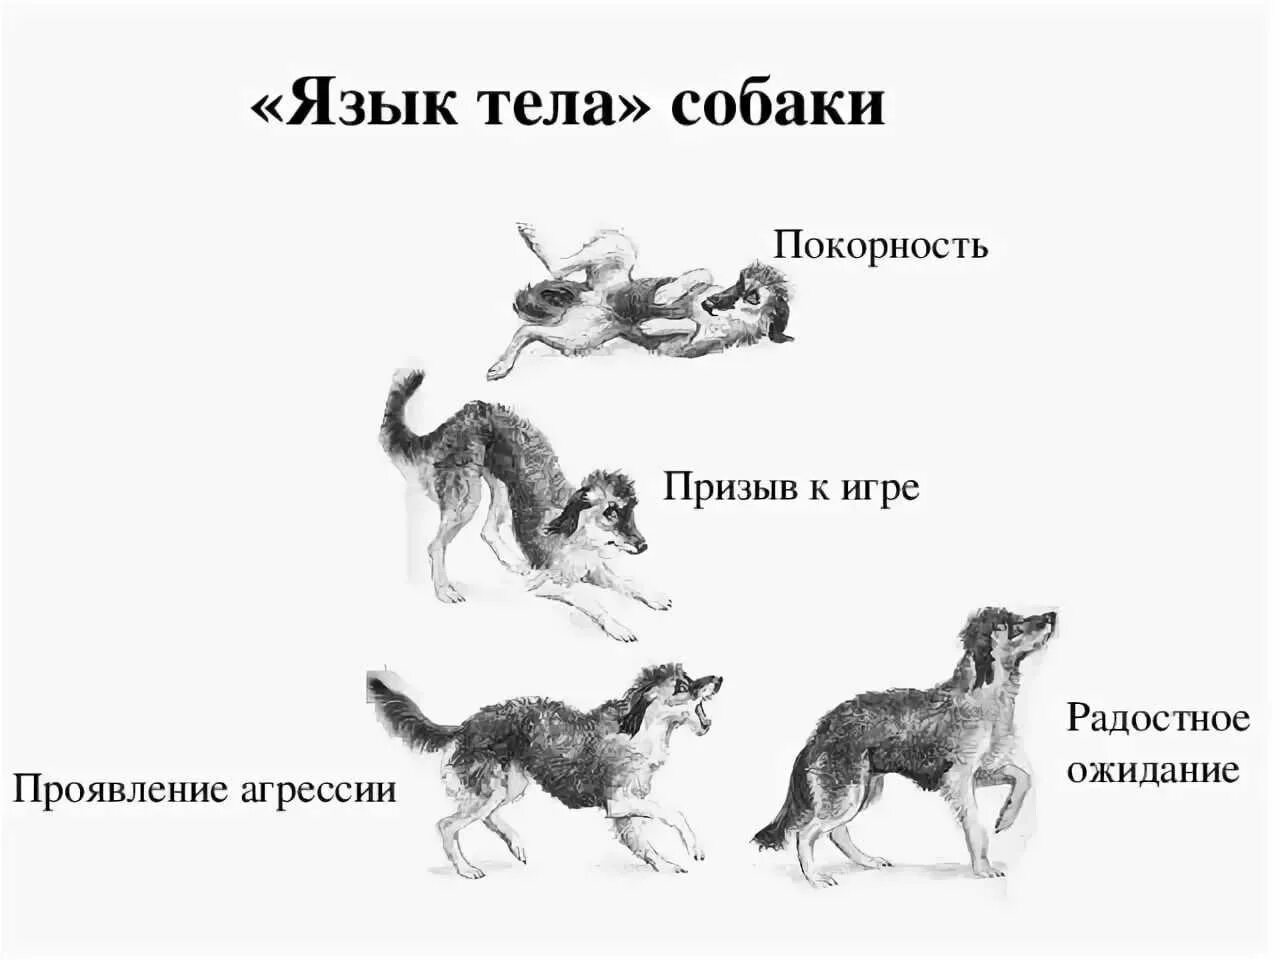 Поведение собак. Язык тела собаки в картинках. Араедение собак. Виды поведения собак. Кошки переводят собаку